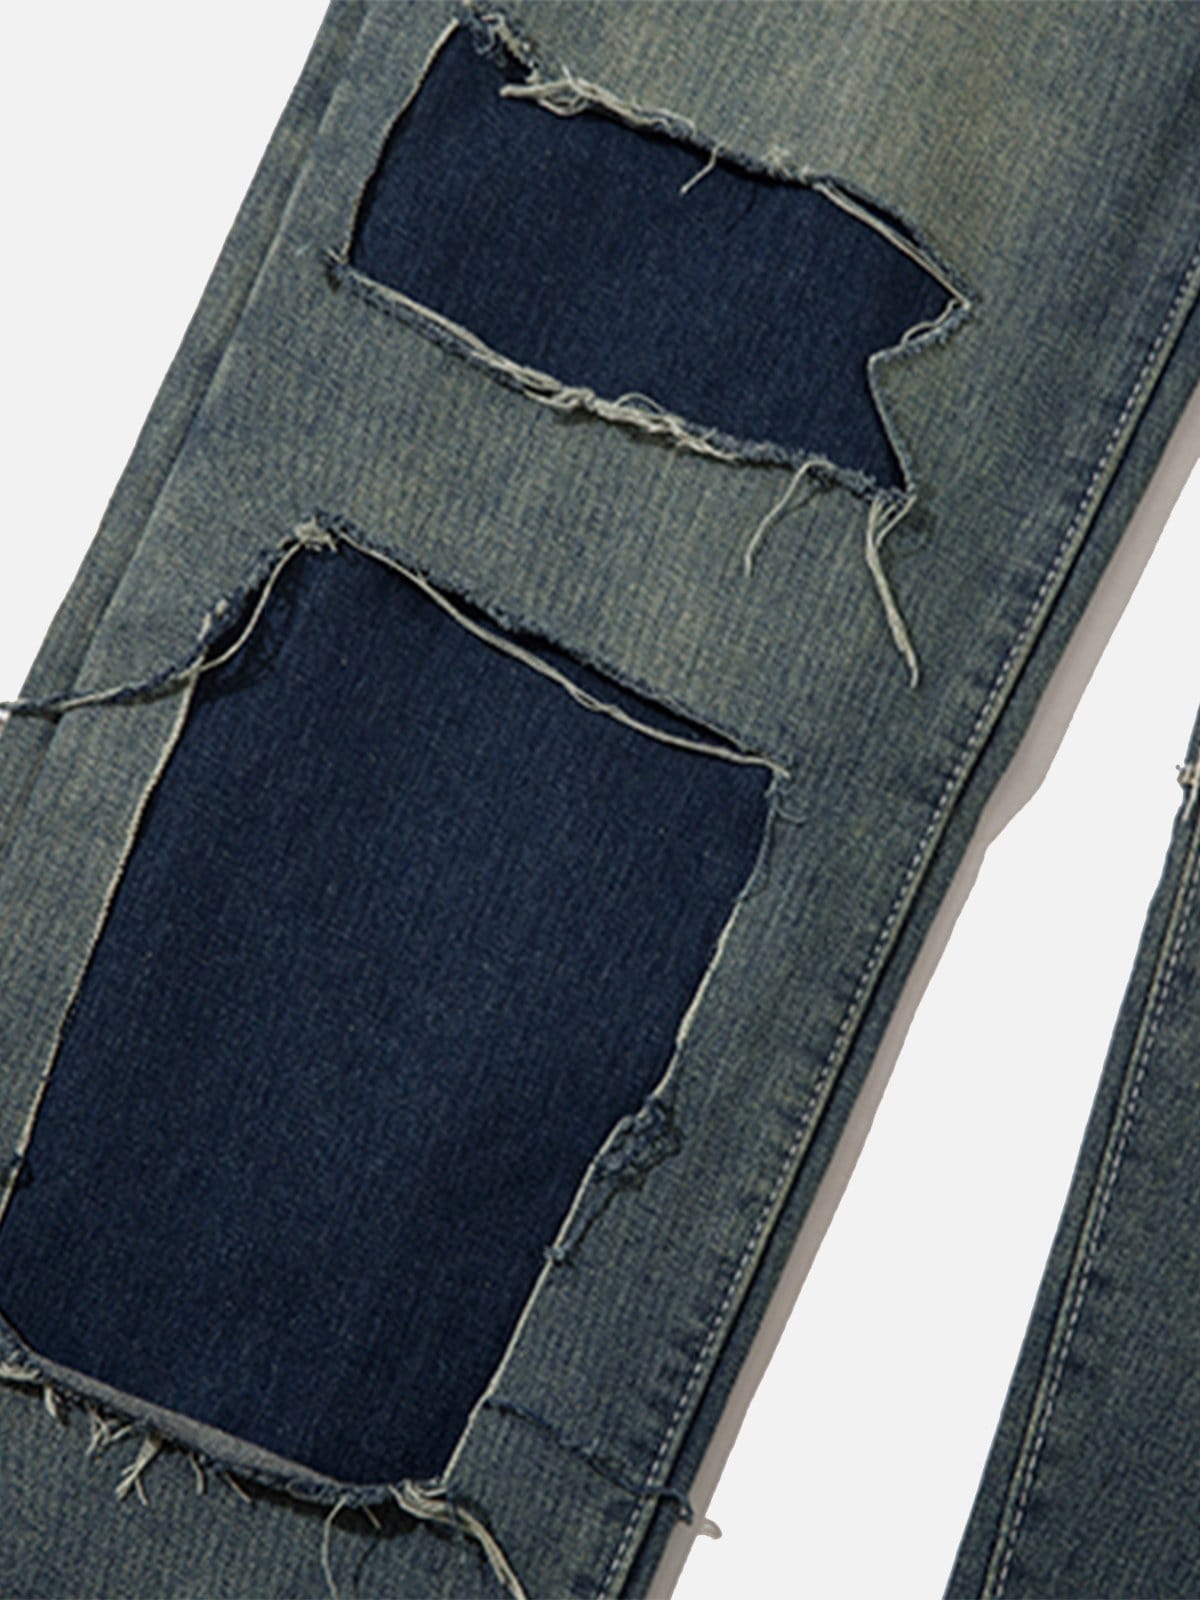 NEV Irregular Patch Jeans